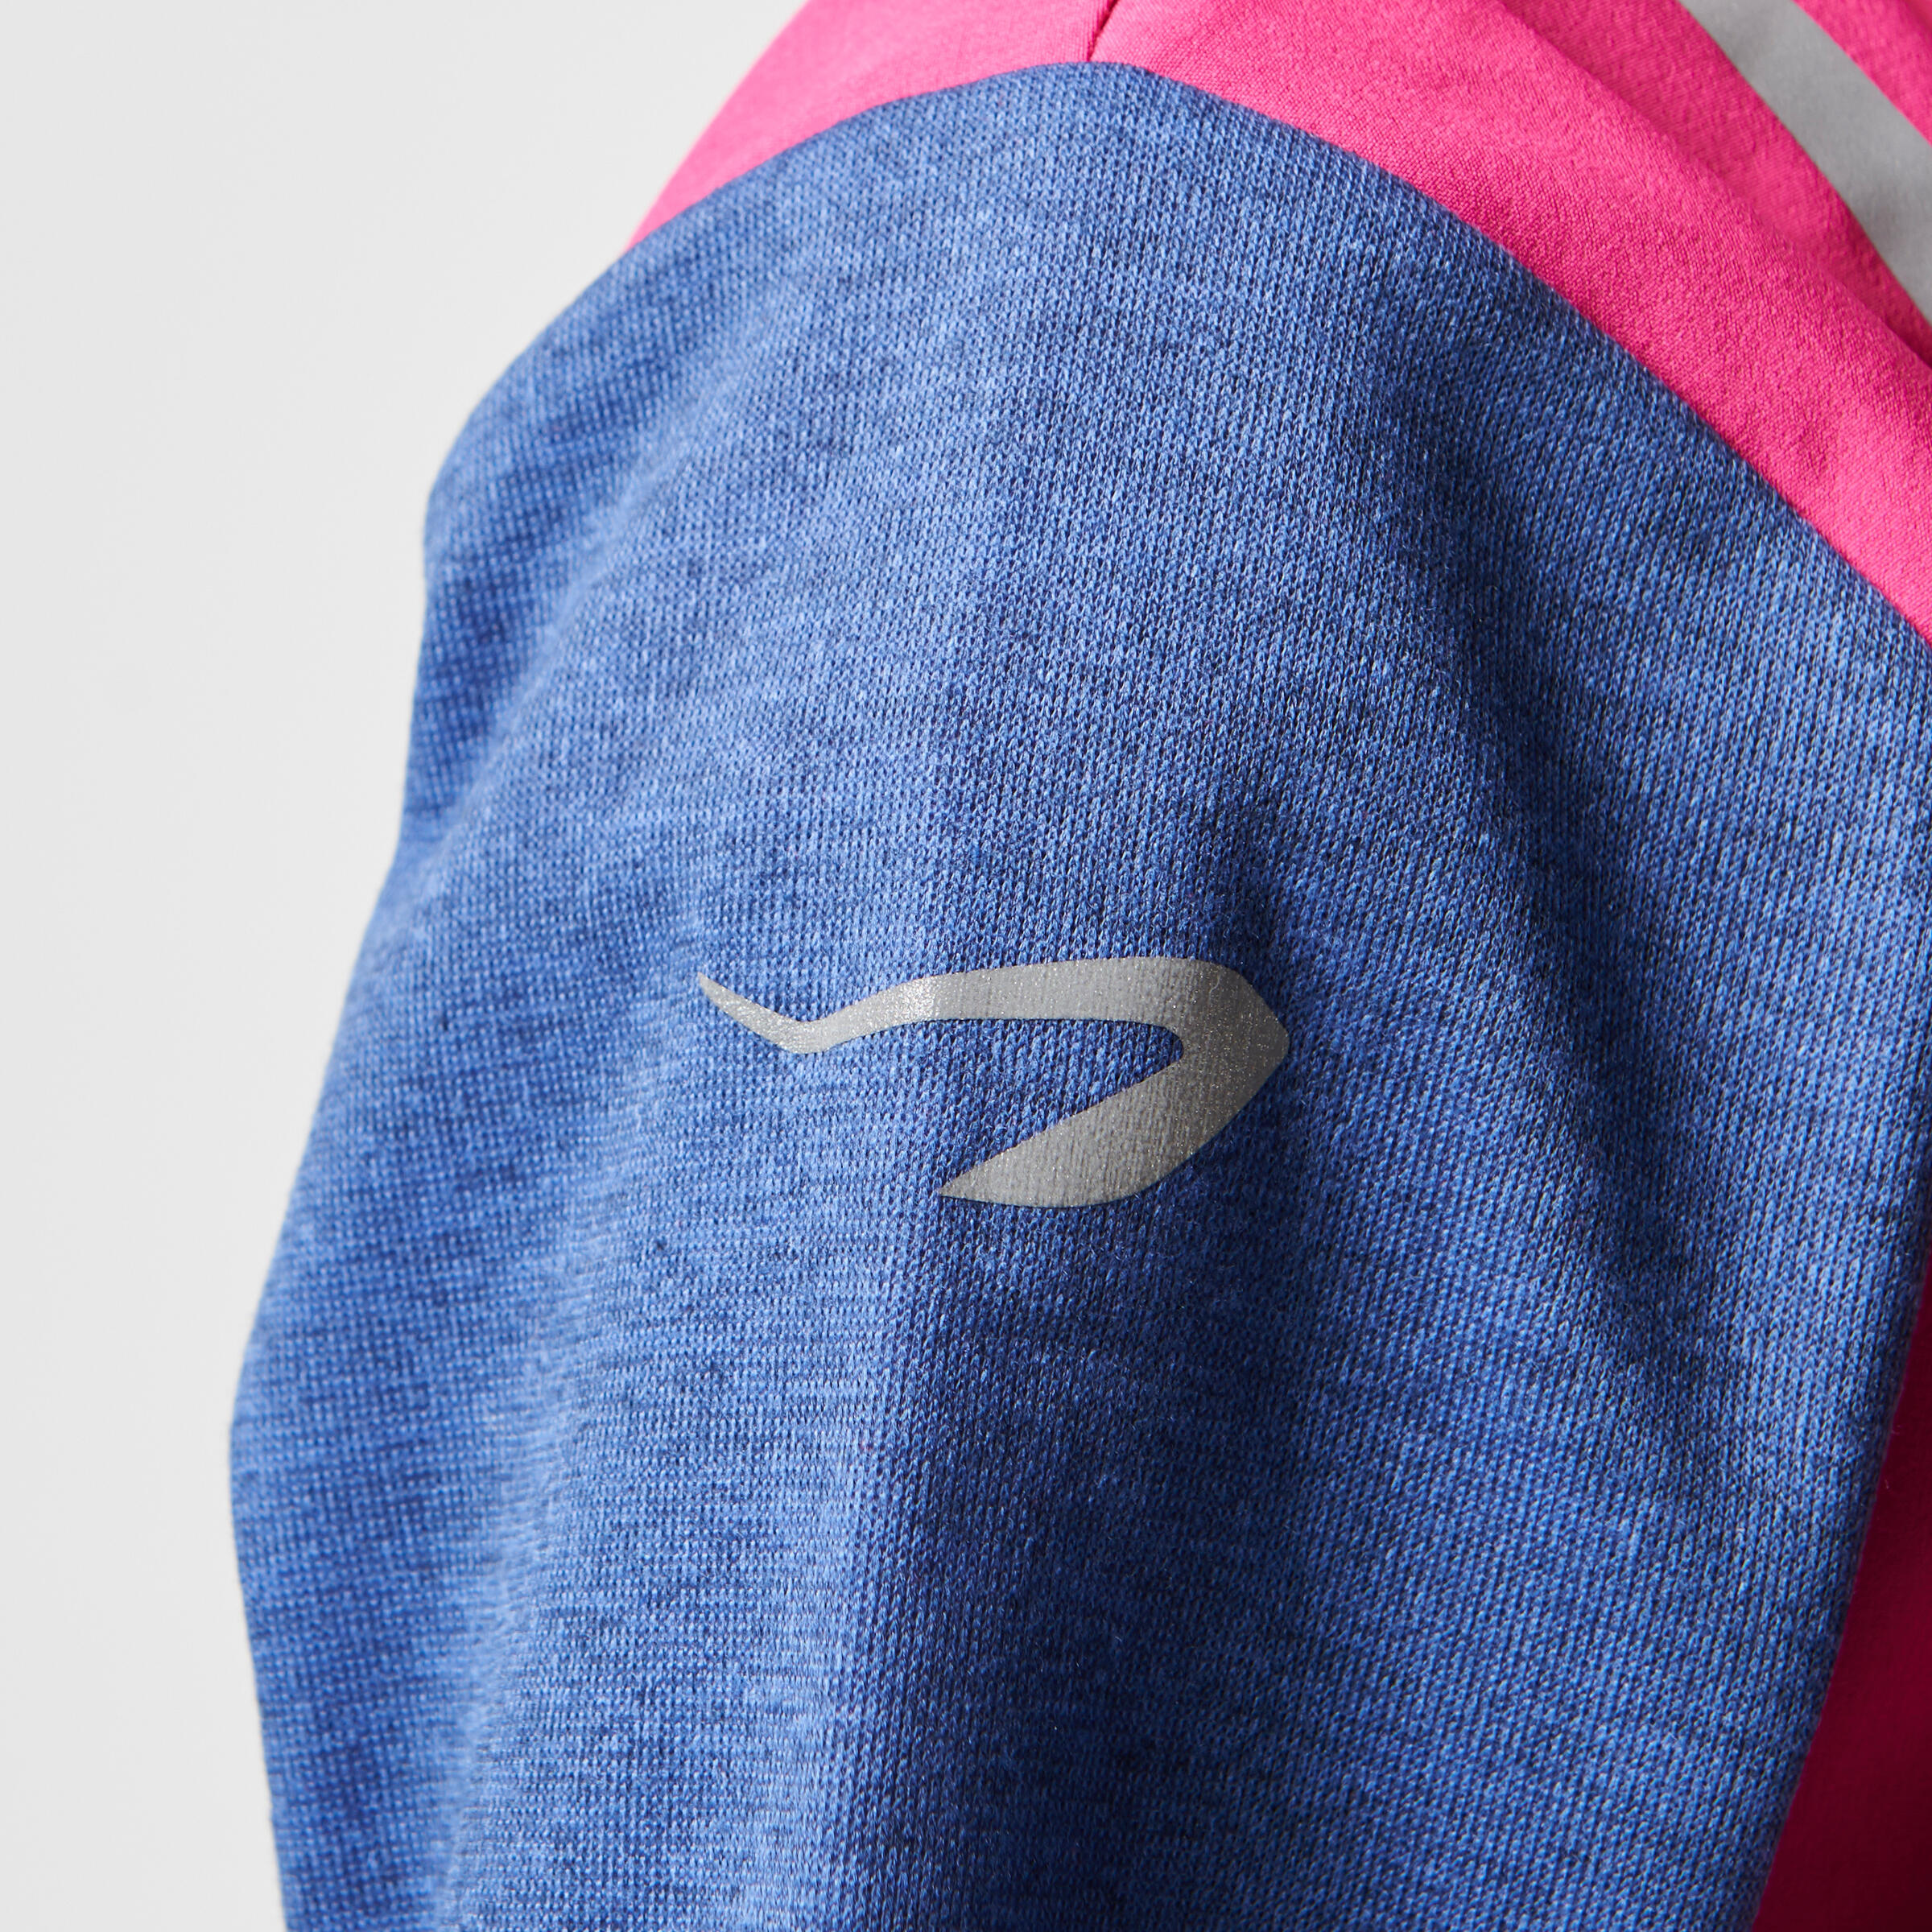 Elio Children's Running Hooded Jersey - Pink/Blue
 16/16